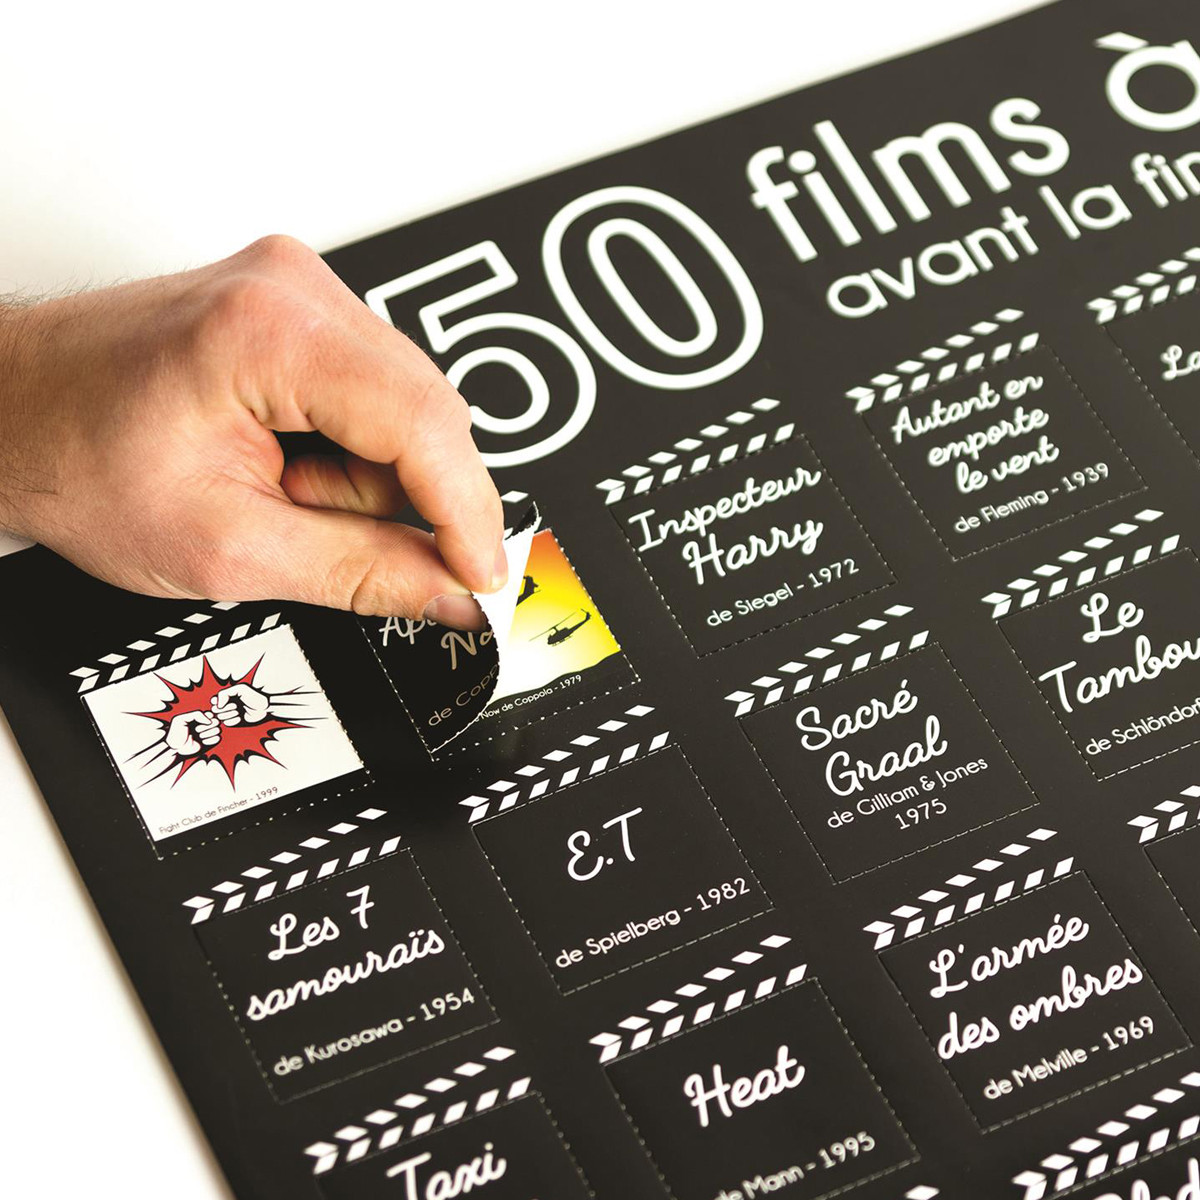 Poster 50 Films à Voir Avant la Fin du Monde - Le Guide Cinéphile